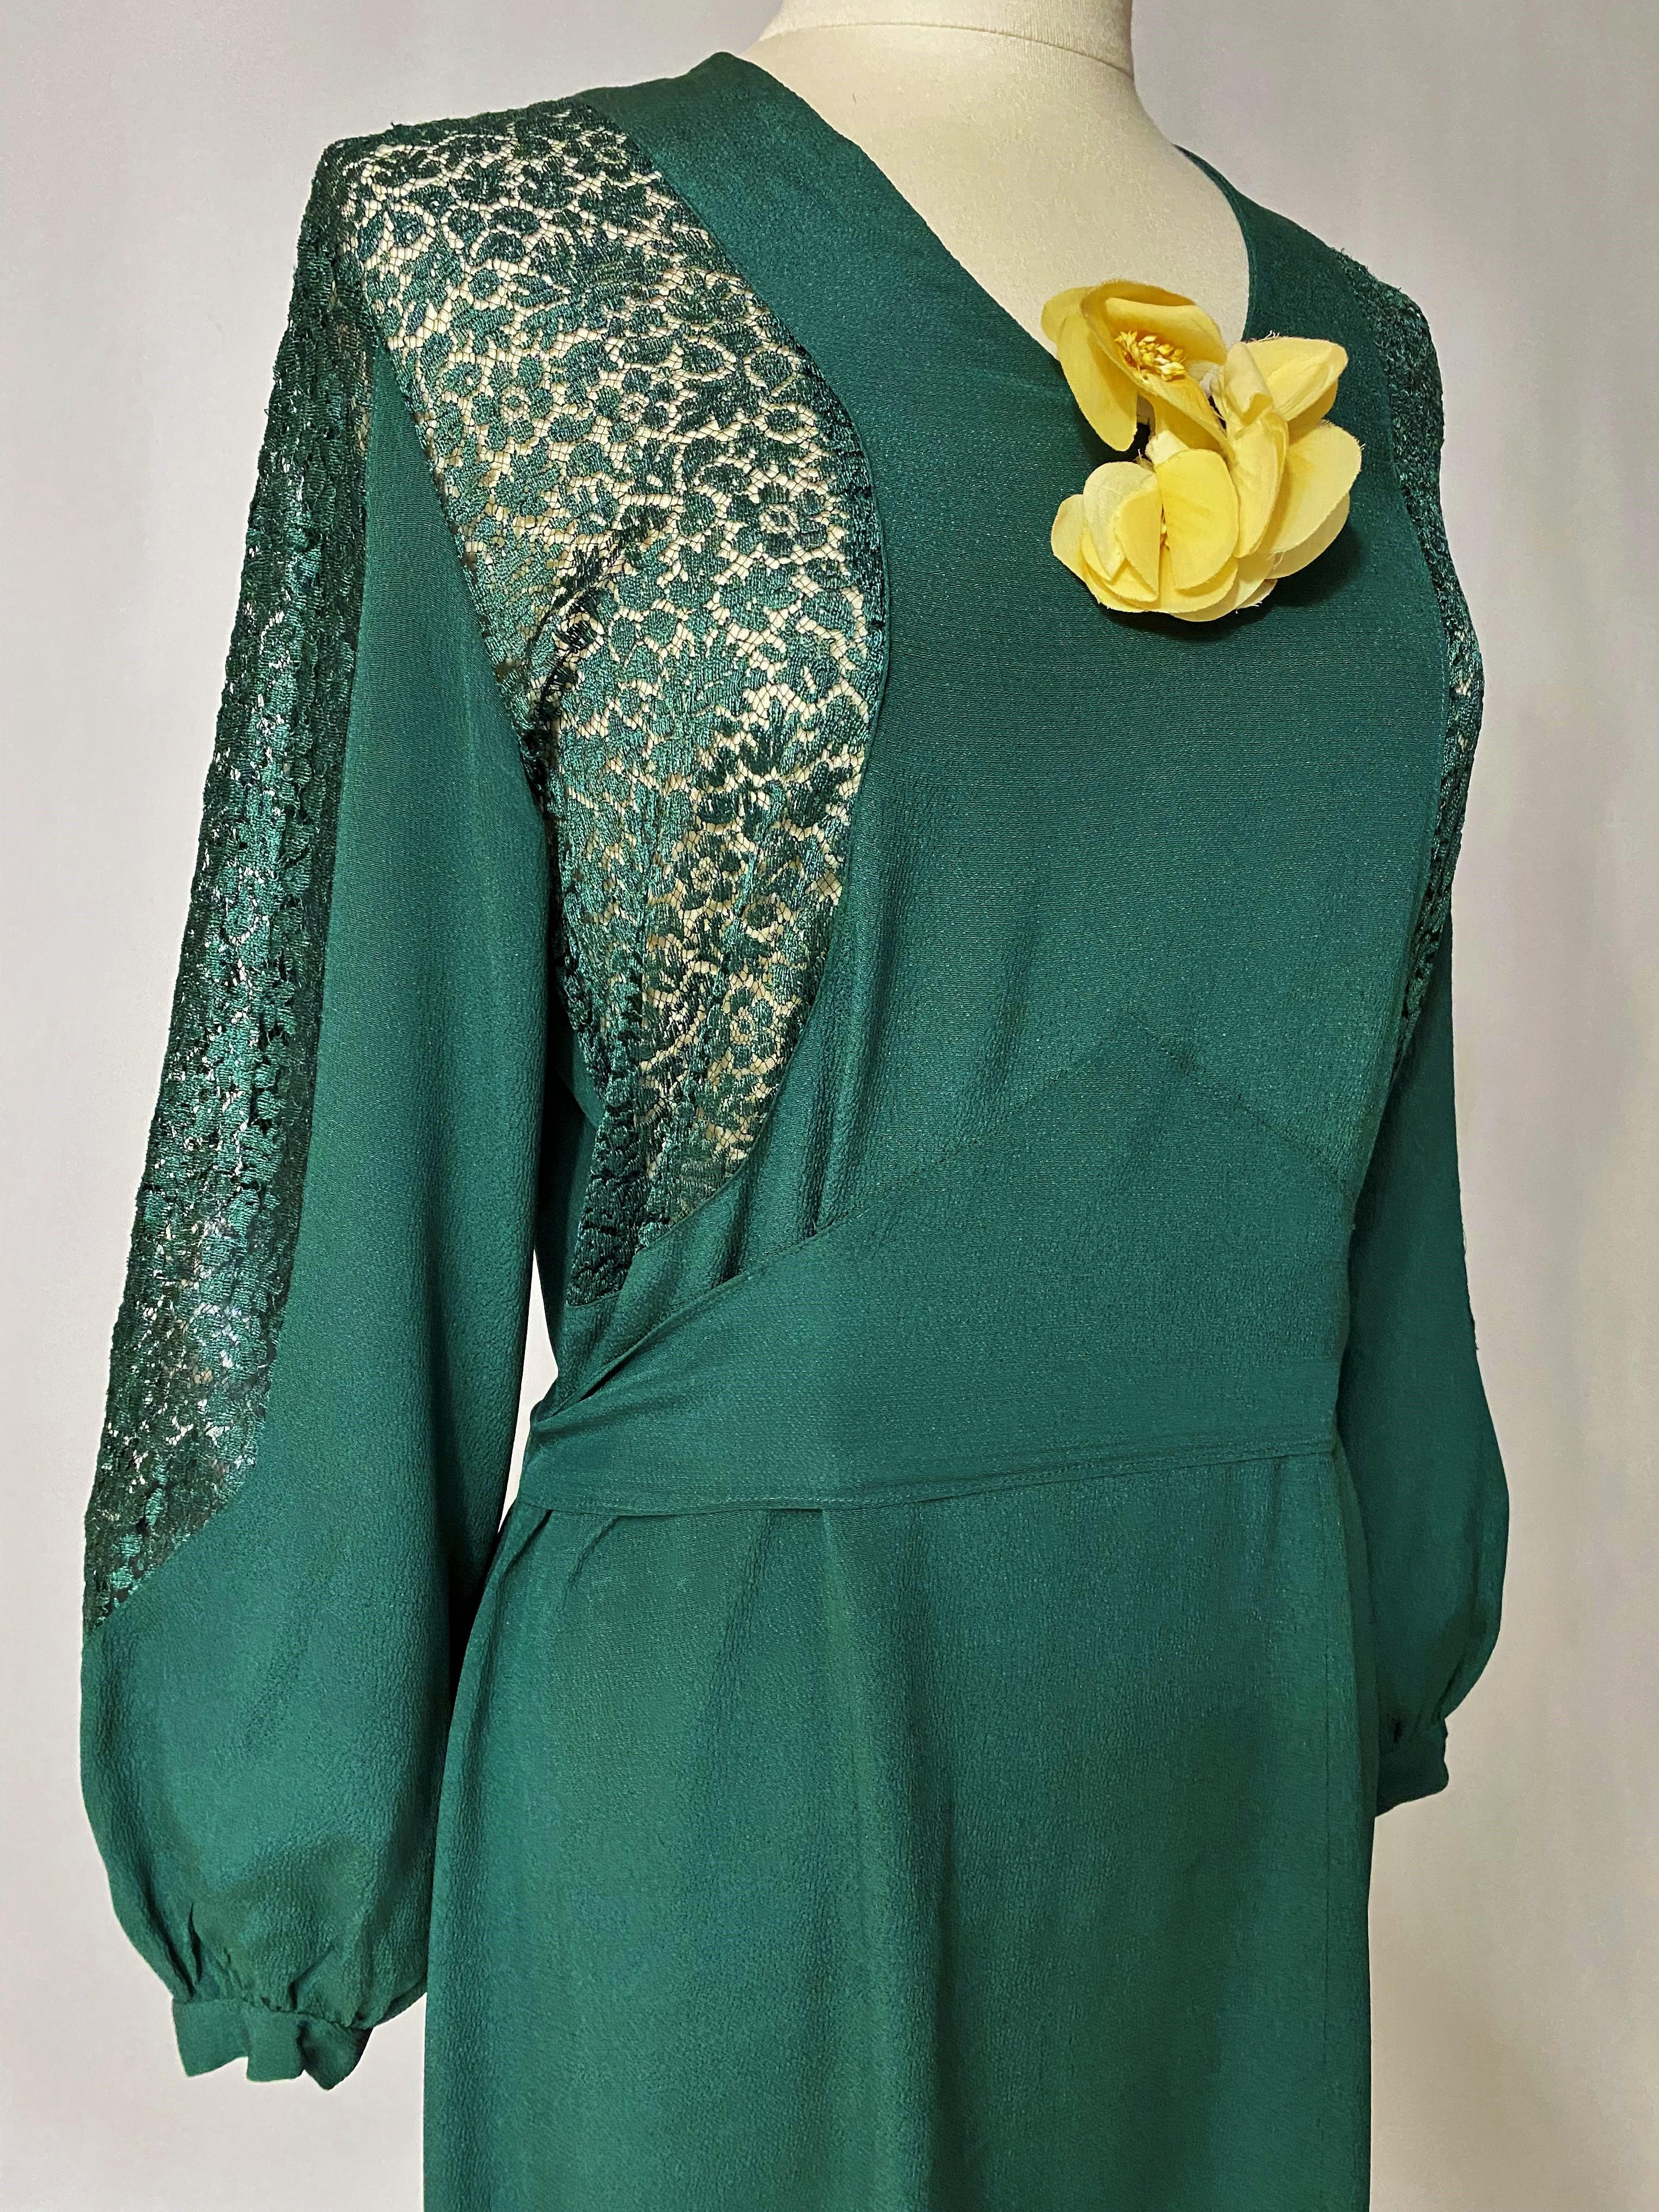 CIRCA 1935-1945

Frankreich

Smaragdgrünes Abendkleid aus Crêpe mit Spitzeneinsätzen aus den 1940er Jahren. Langes Kleid mit Puffärmeln und Latz-Effekt. V-förmig angesetzter Gürtel unterstreicht das Bustier und wird hinten gebunden. Gefrorene